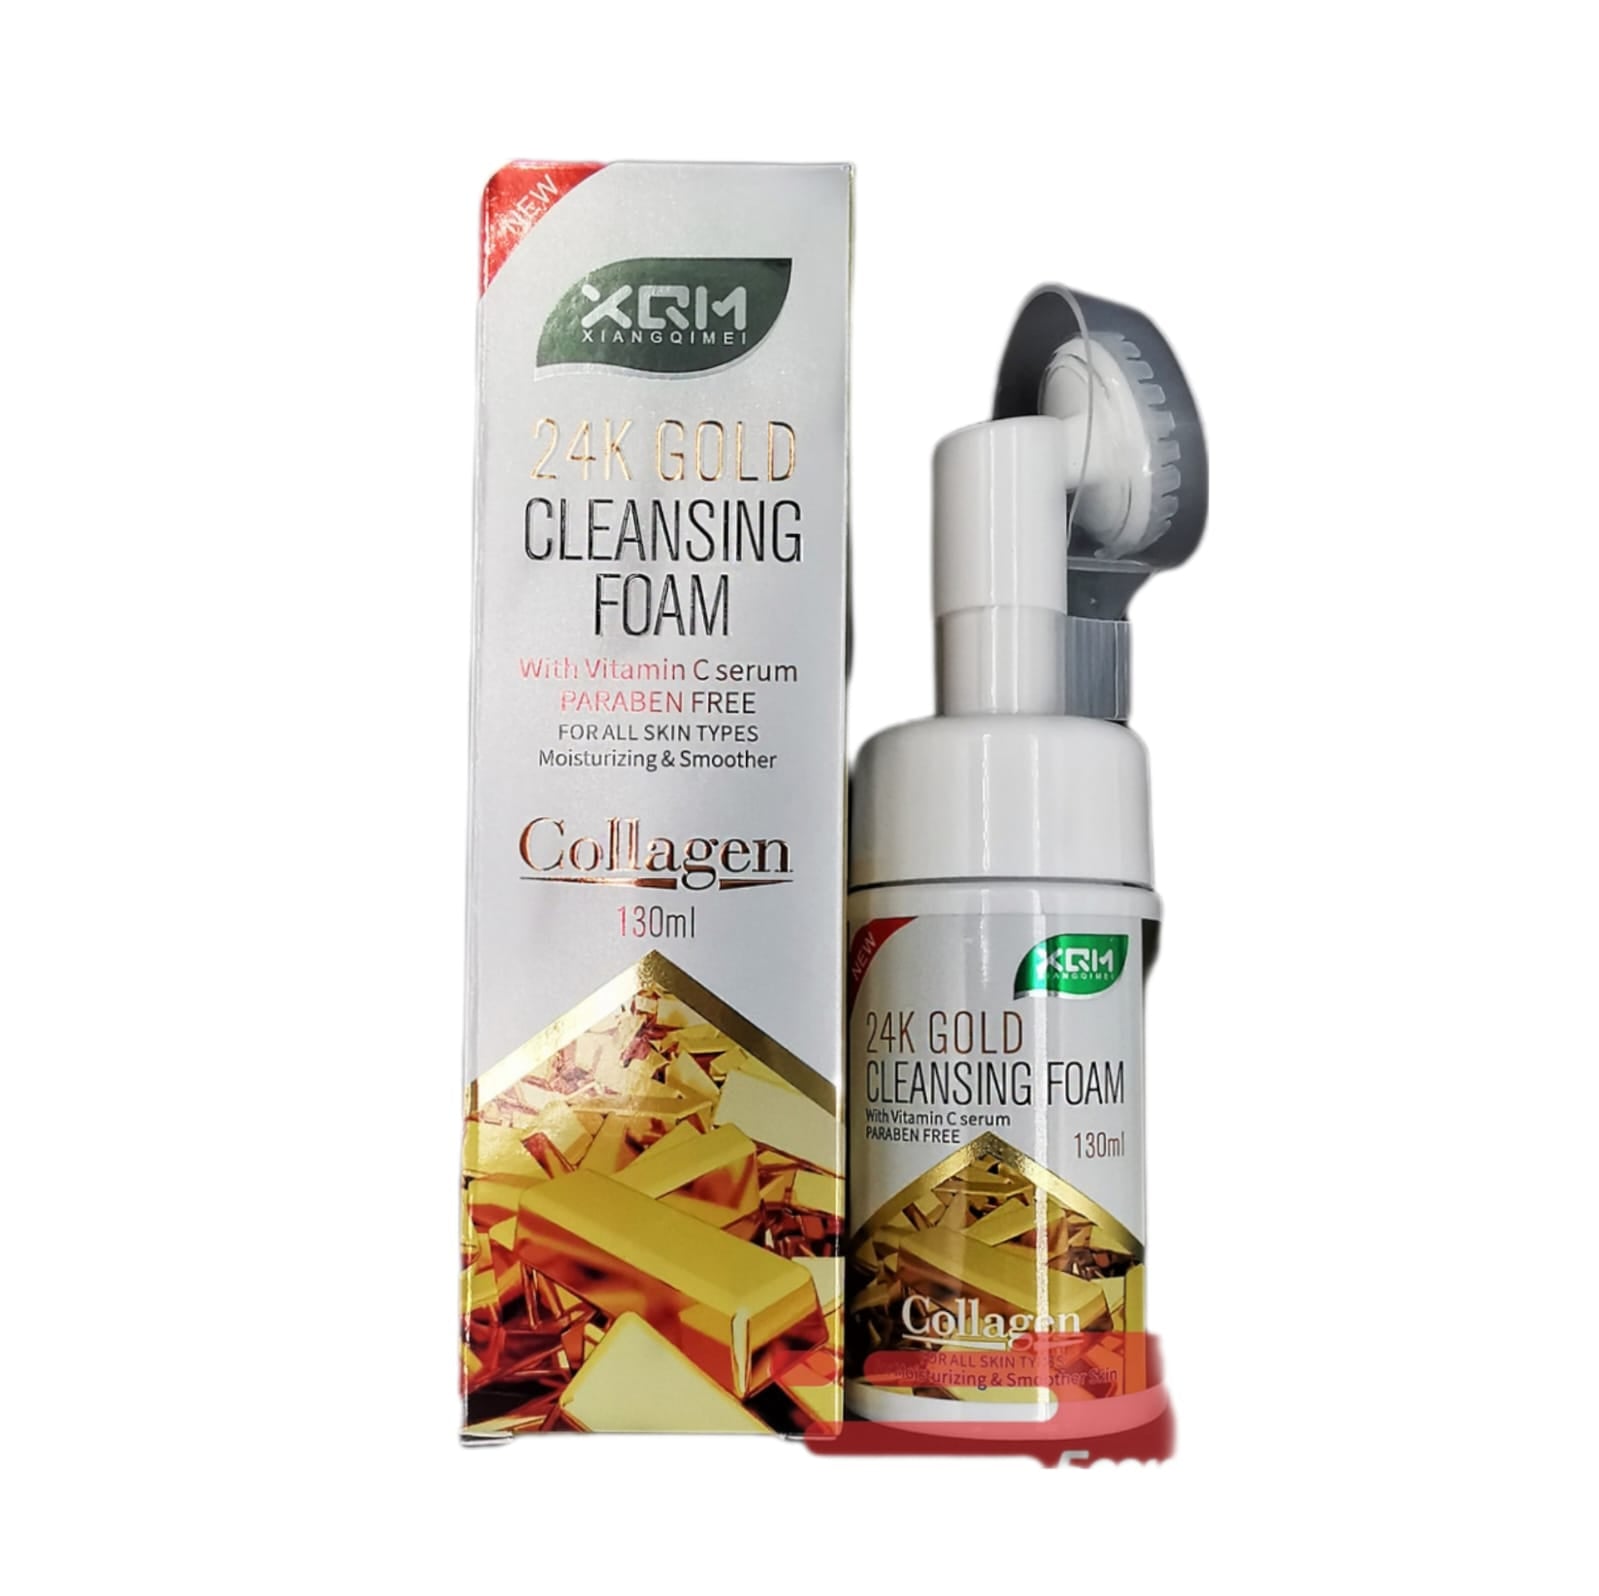 XQM Collagen 24K Gold Cleansing Foam With Vitamin C Serum - 130ml